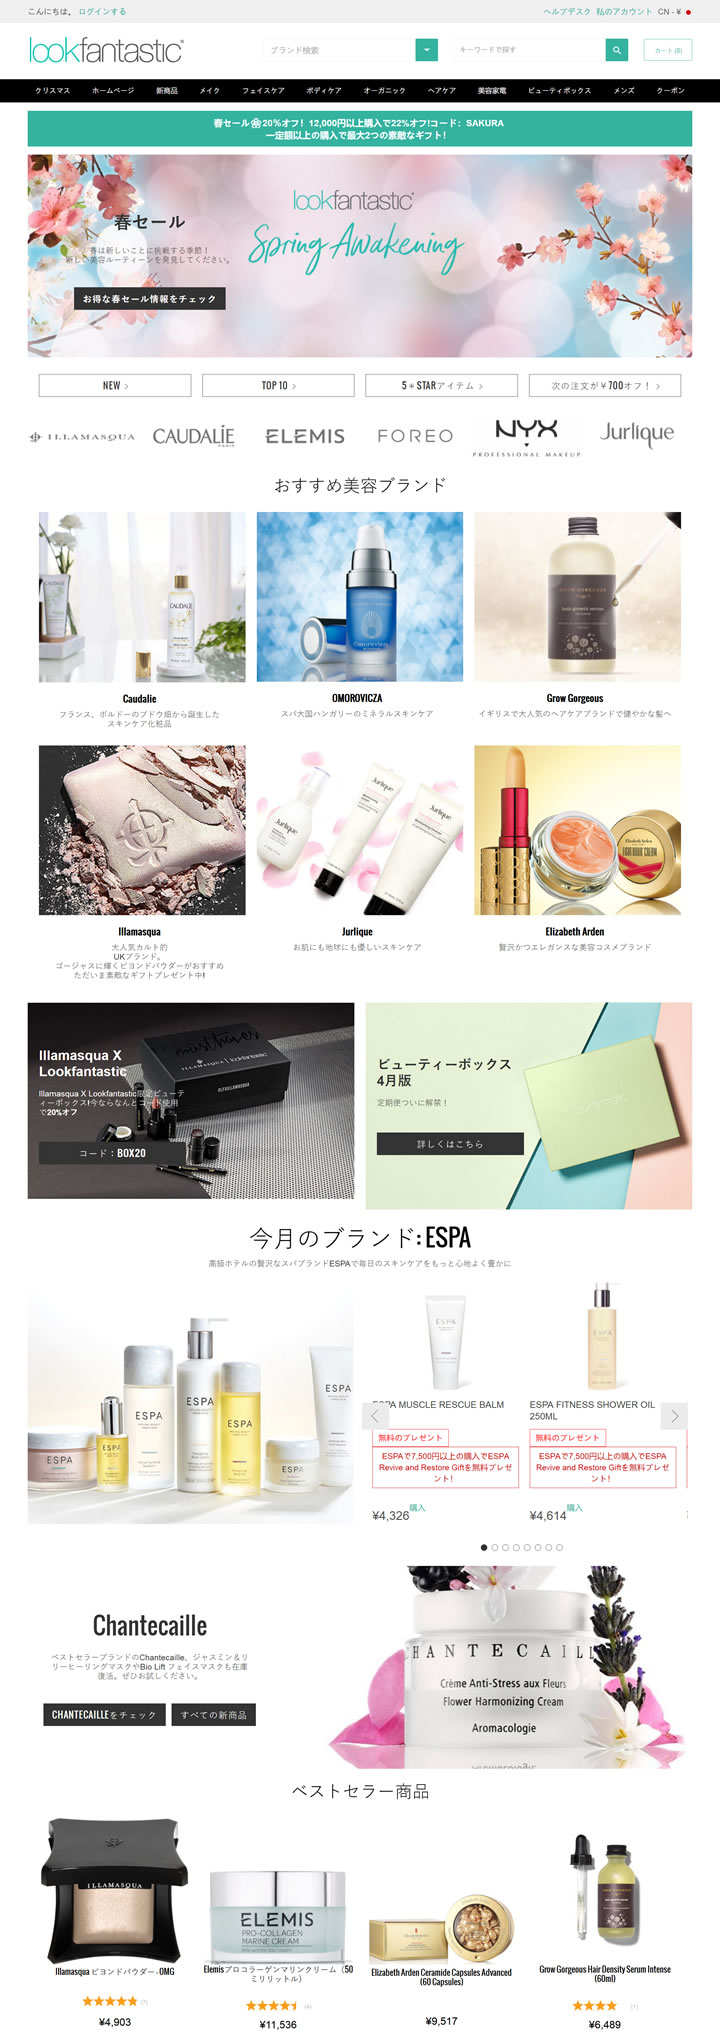 Lookfantastic日本官網：英國知名護膚、化妝品和頭發護理購物網站 日本購物網站 MeetKK-MeetKK